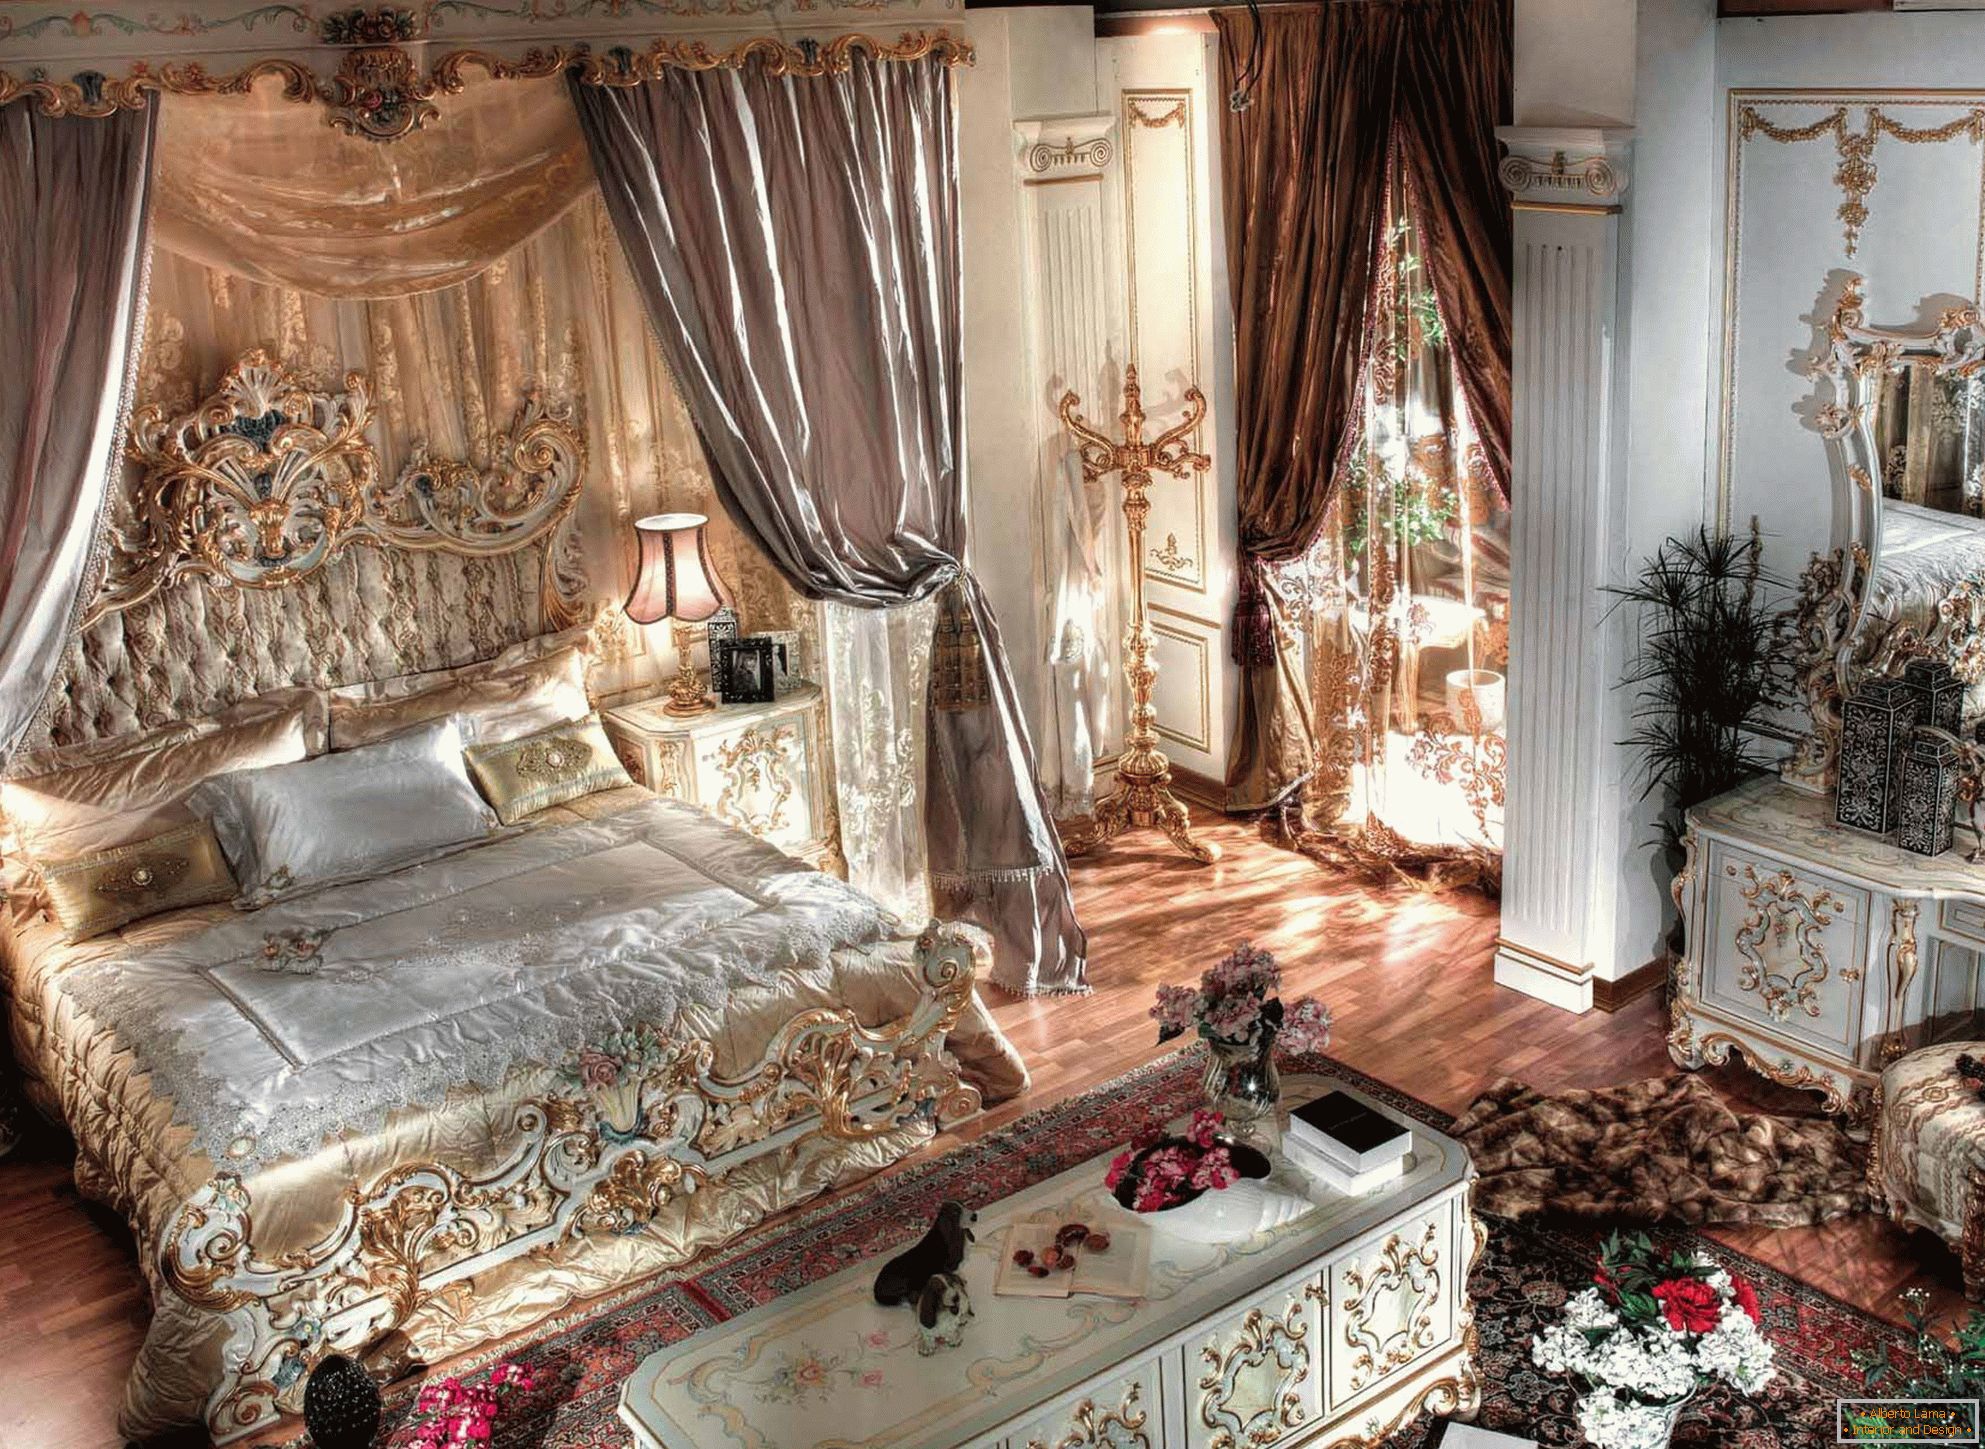 Розкішна спальня в стилі бароко з високими стелями. У центру композиції масивна ліжко з дерева з різьбленими спинками.